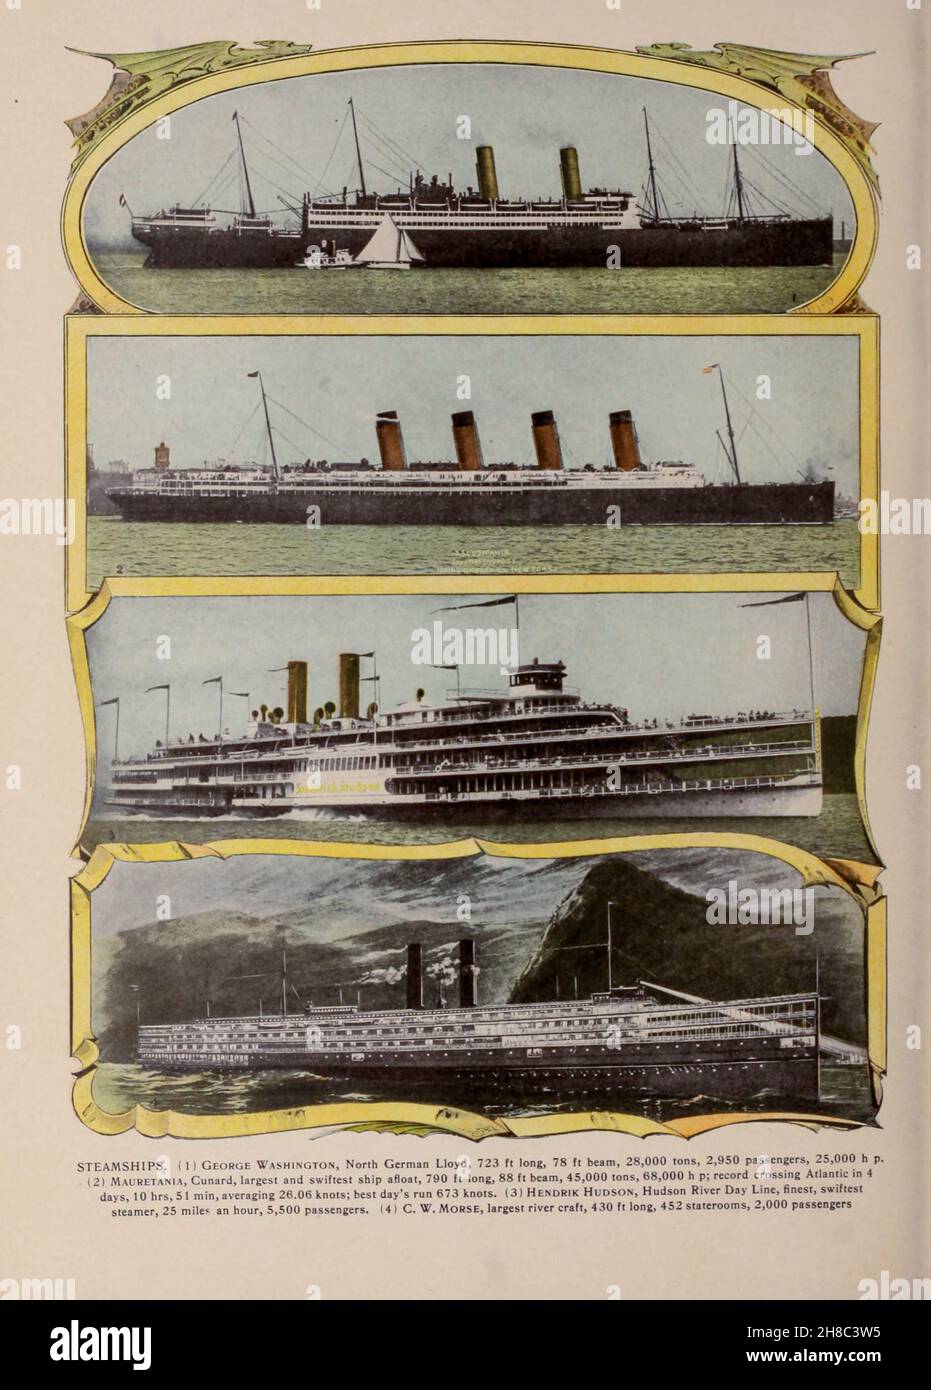 Les bateaux à vapeur de New York Harbour sont tirés du livre « King's color-graphs of New York City » publié à New York par M. King, inc. En 1910 Banque D'Images